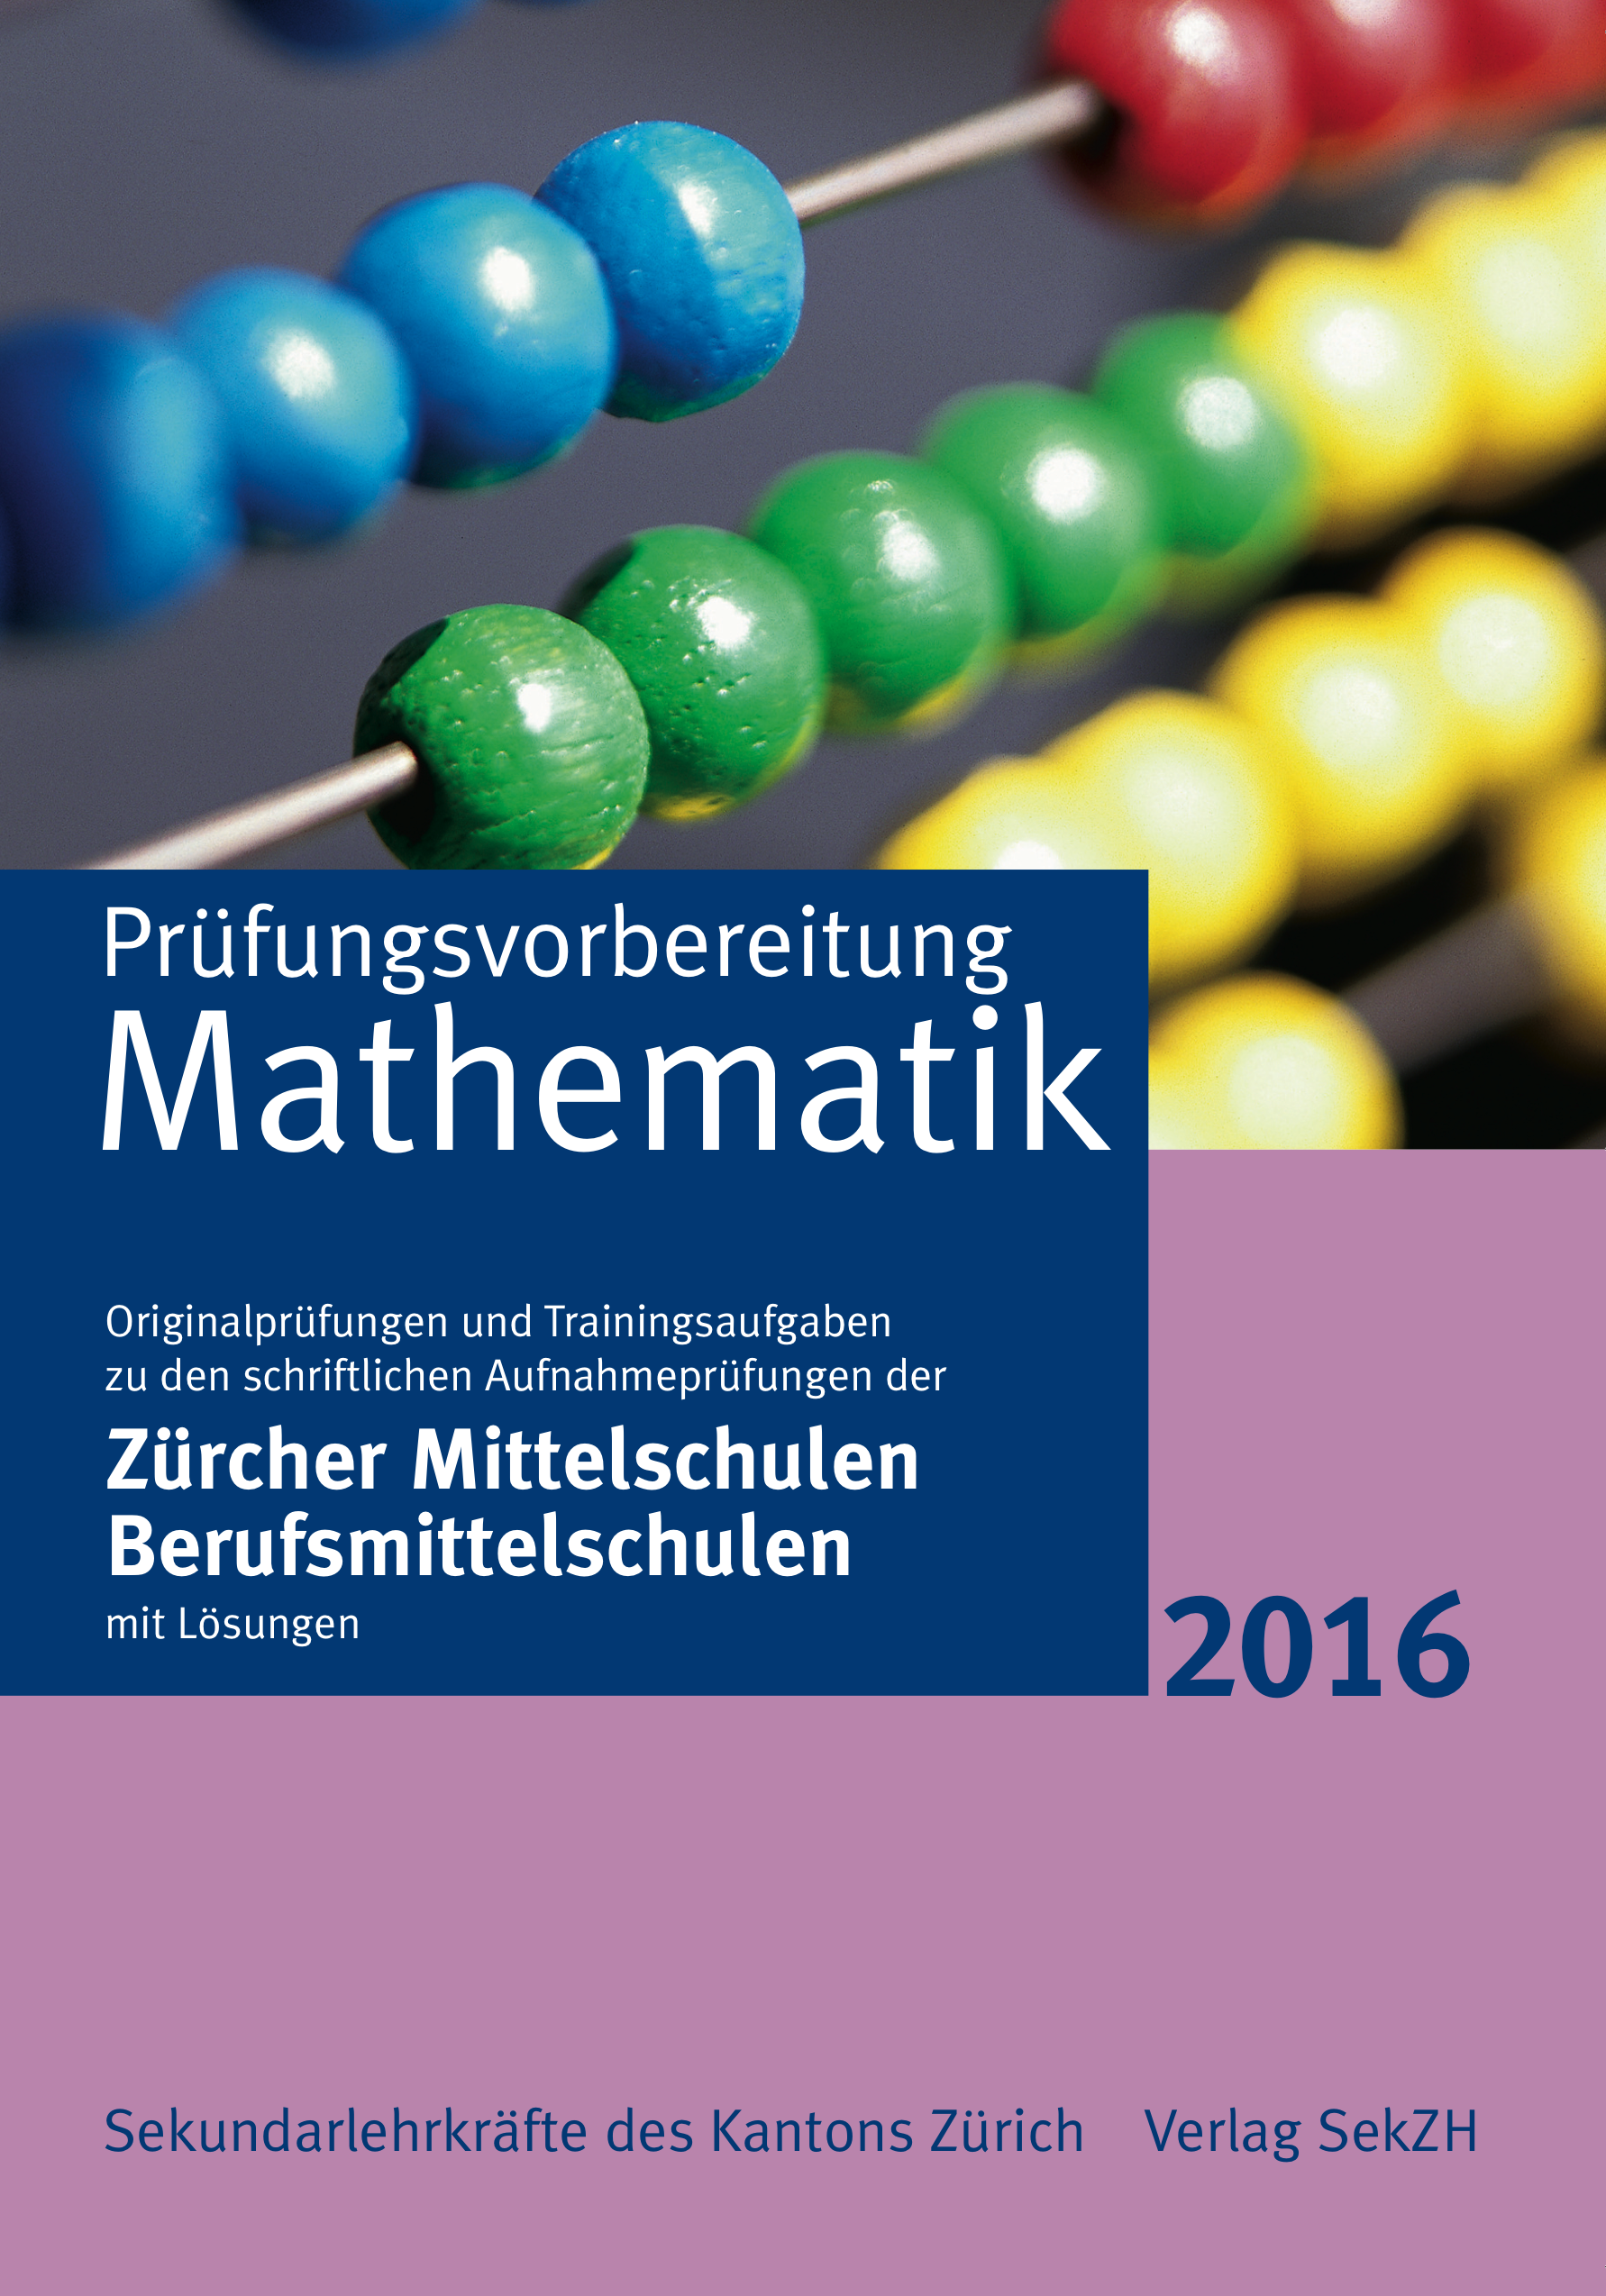 P402 - Prüfungsvorbereitung Mathematik 2016